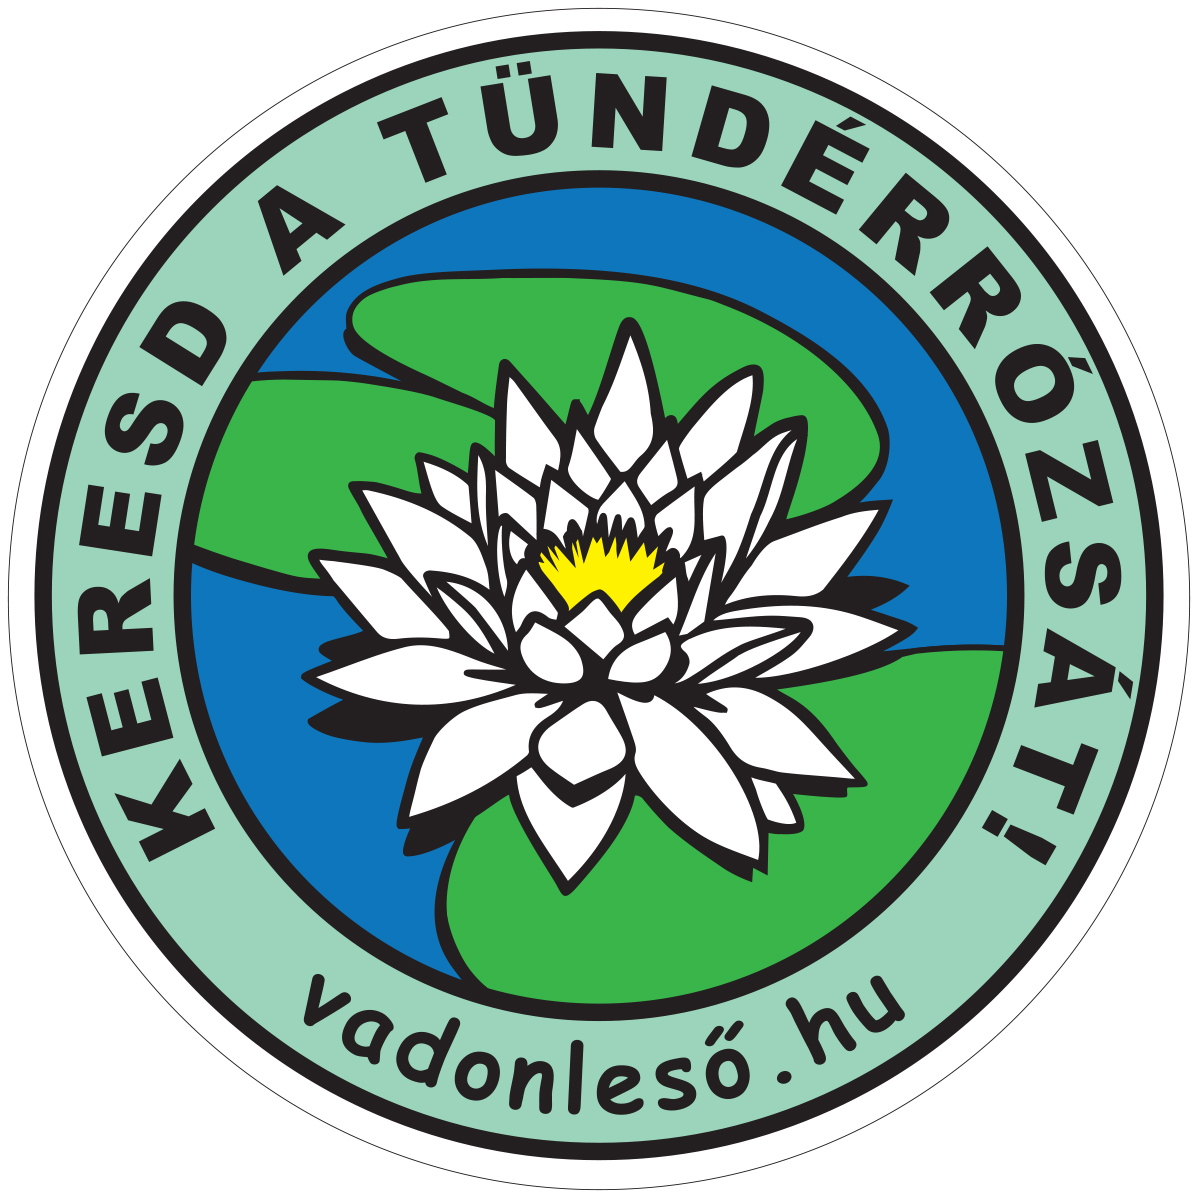 Keresd a Tündérrózsát logója